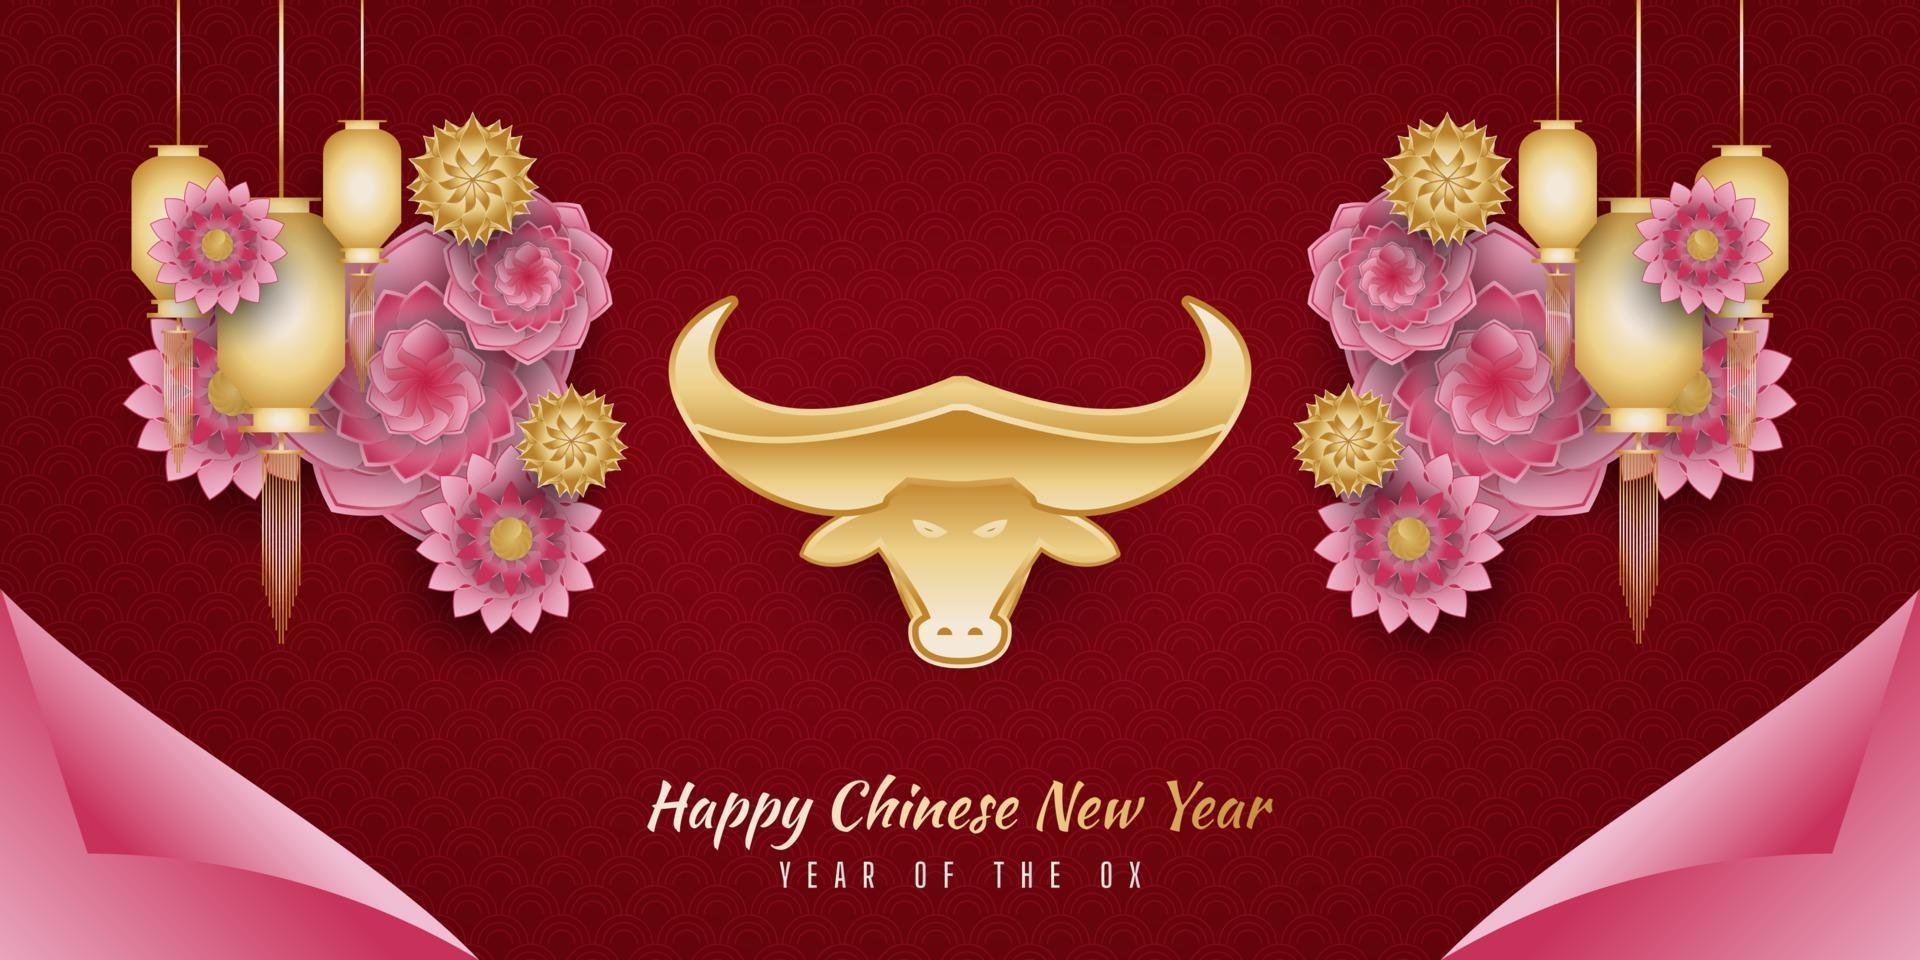 capodanno cinese 2021 anno del bue. felice anno nuovo lunare banner con bue dorato e lanterna e ornamenti floreali colorati su sfondo rosso vettore